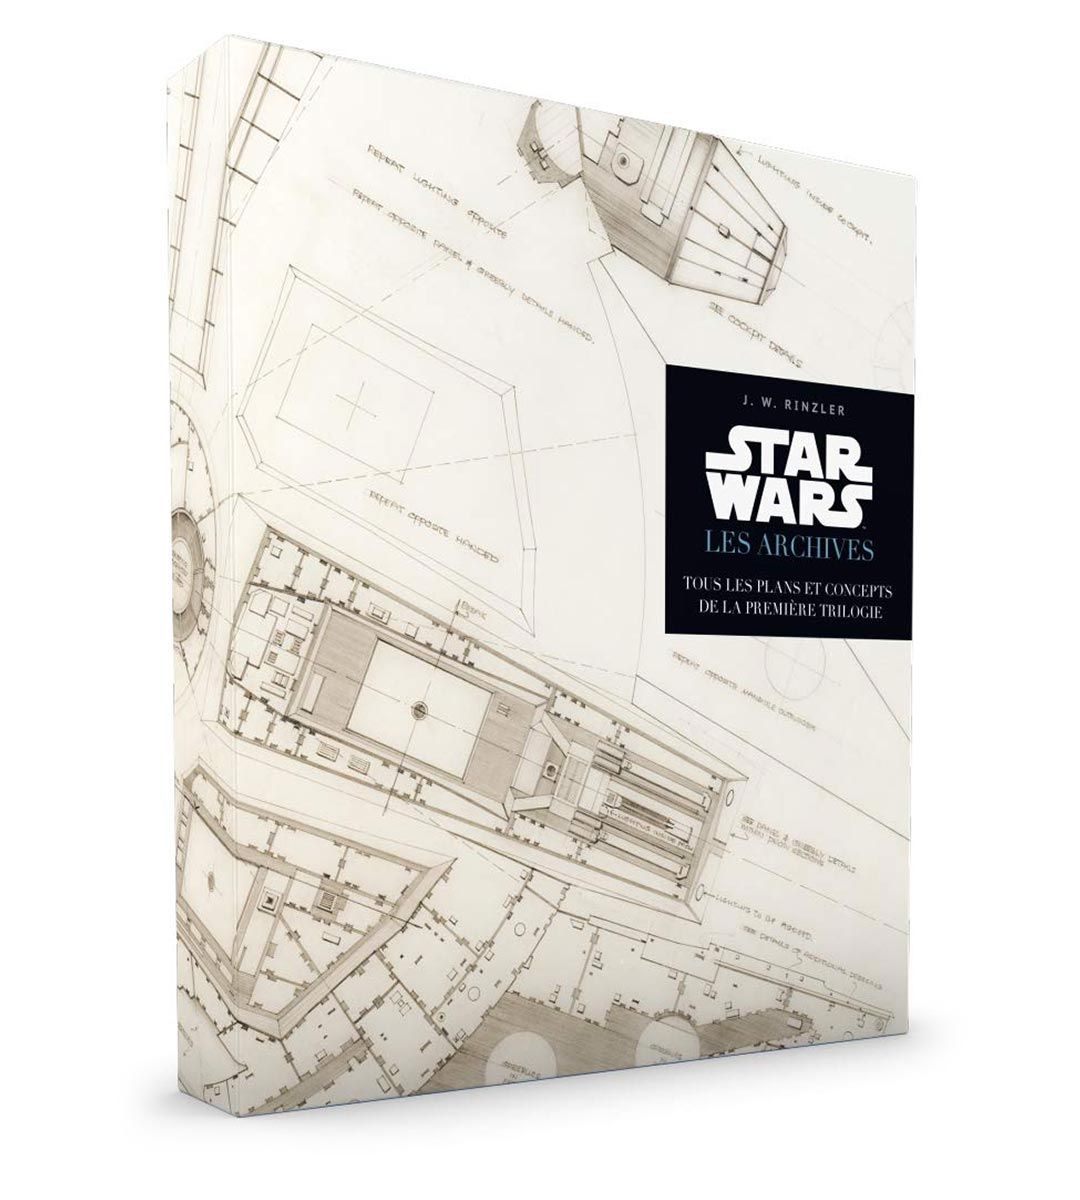 Star Wars: Archivos, todos los planes y conceptos de la primera trilogía